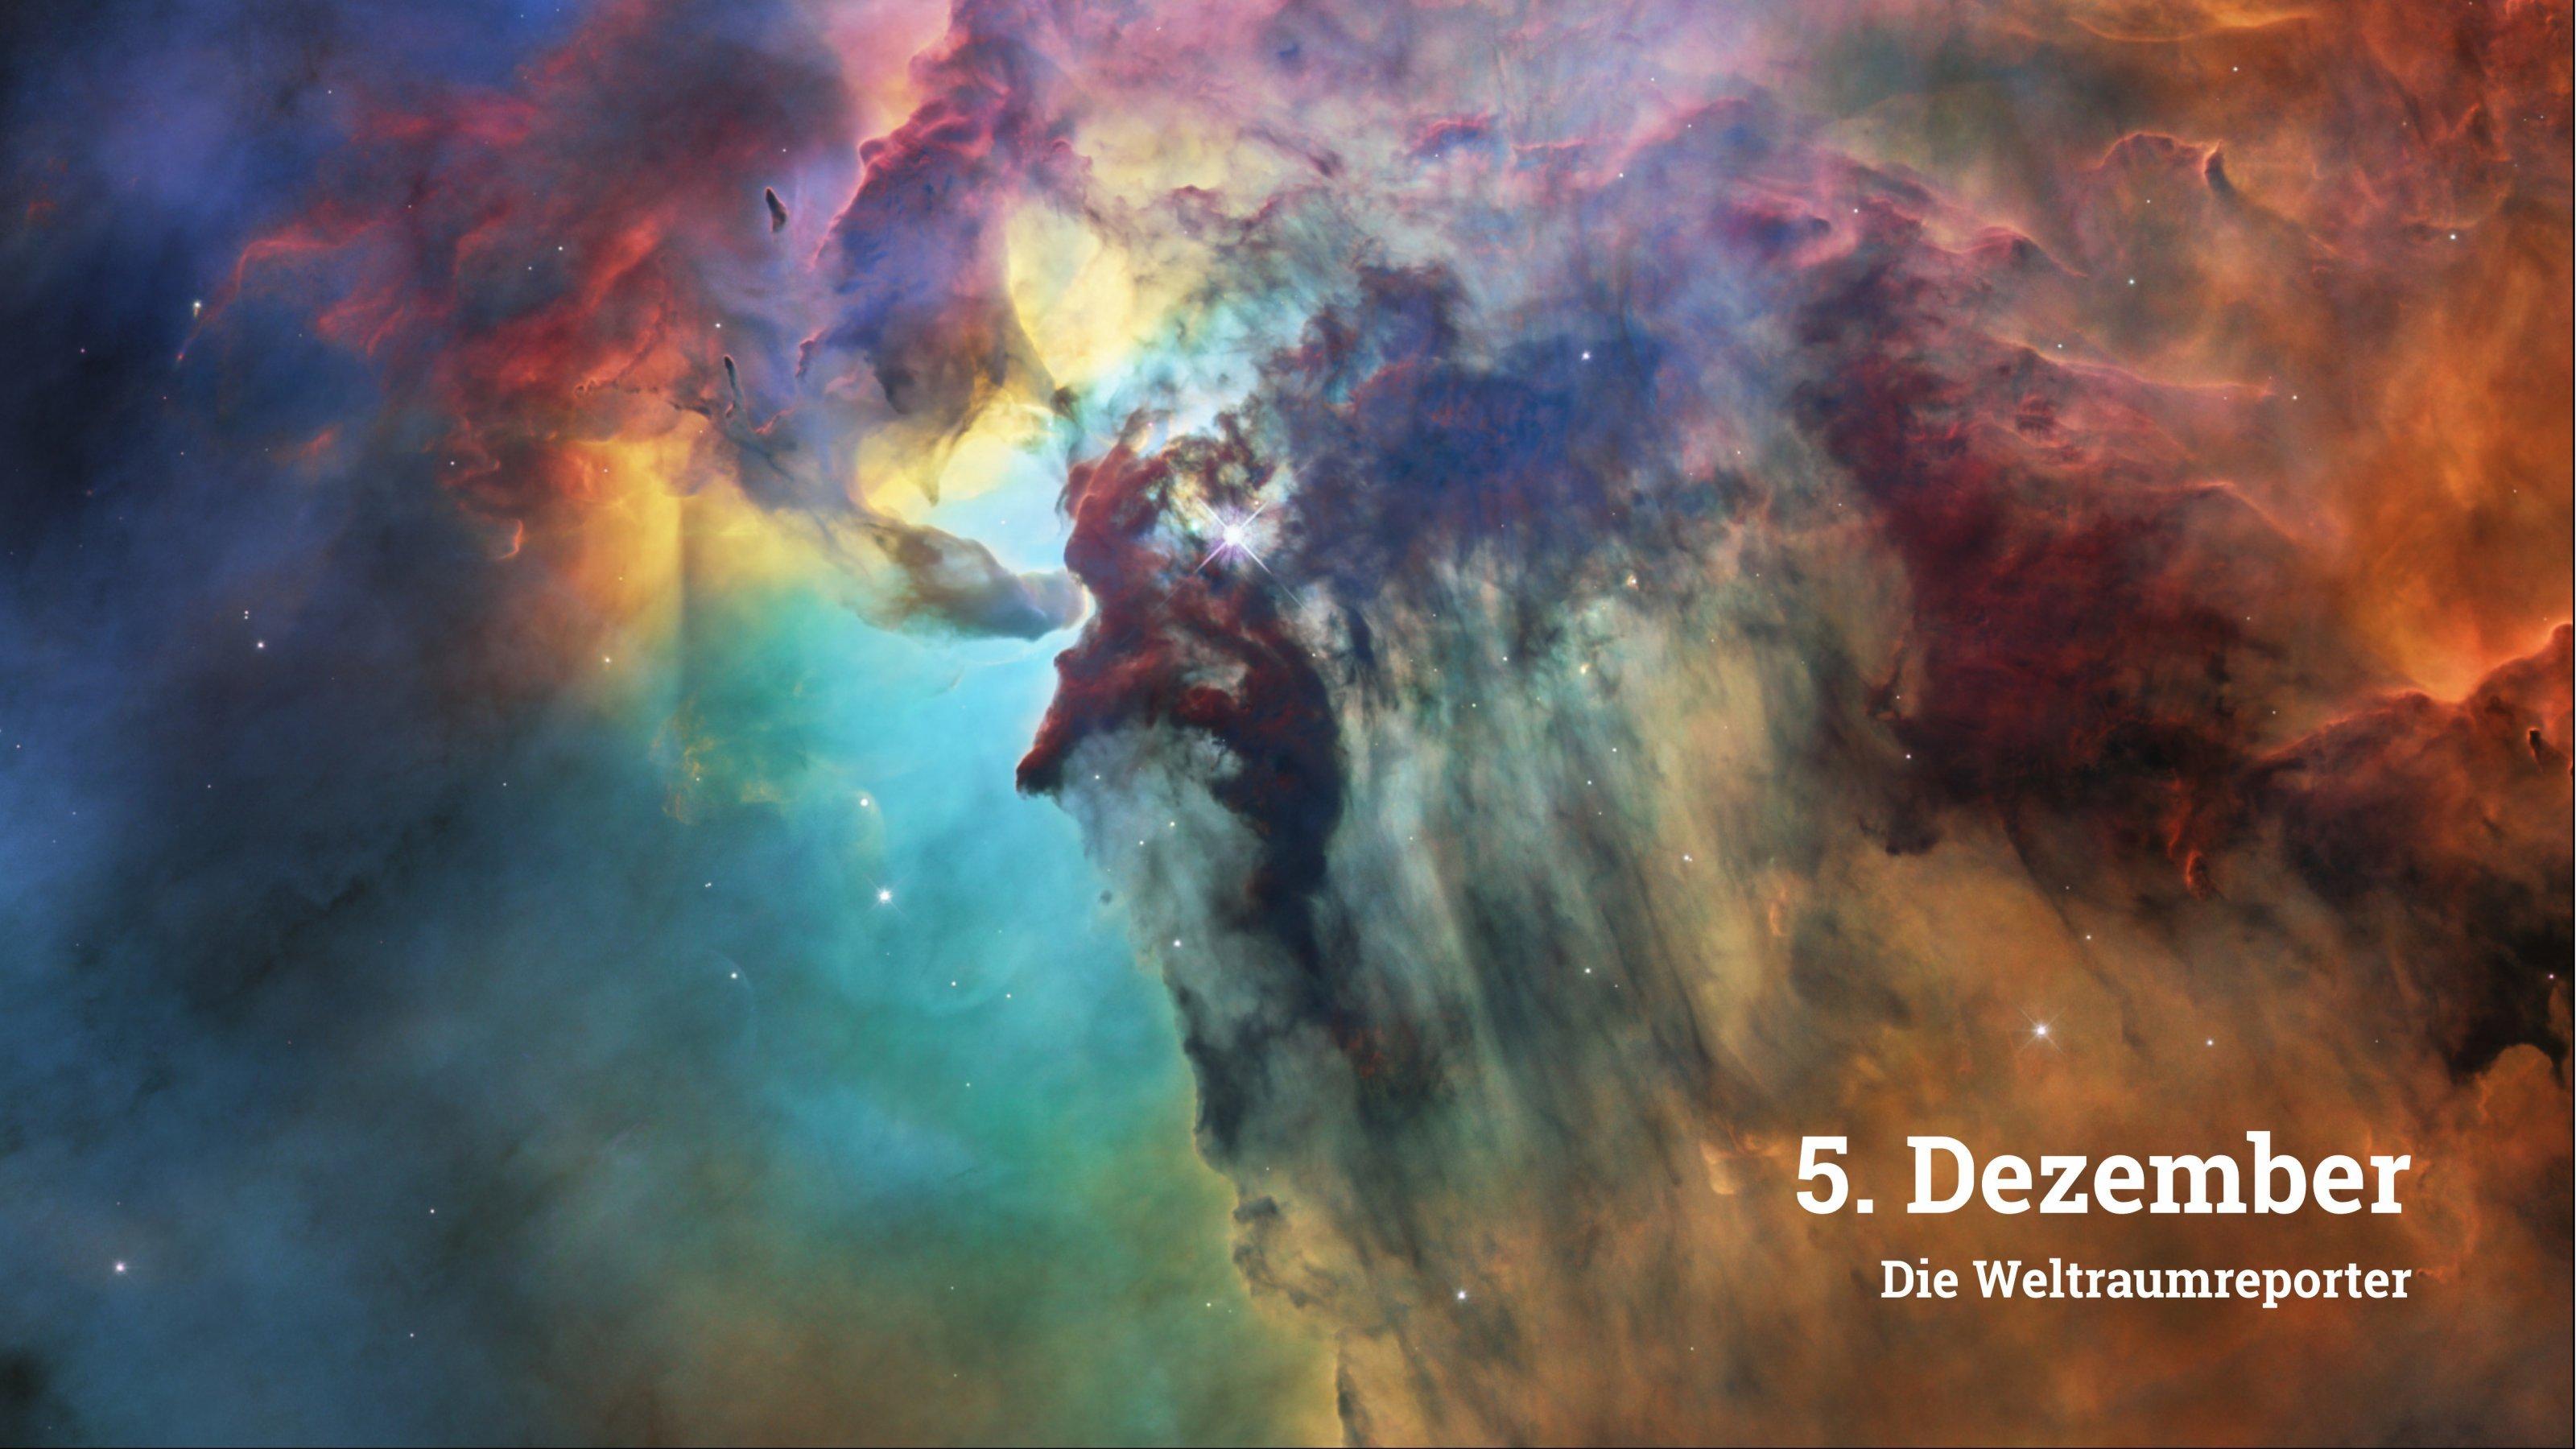 Im Bild sind nebelartige Strukturen in den unterschiedlich schillernden Farben eines Regenbogens zu sehen. An einigen Stellen durchziehen dunklere Gebiete den farbprächtigen Nebel. Aufnahme des Lagunennebels mit dem Hubble-Weltraumteleskop.